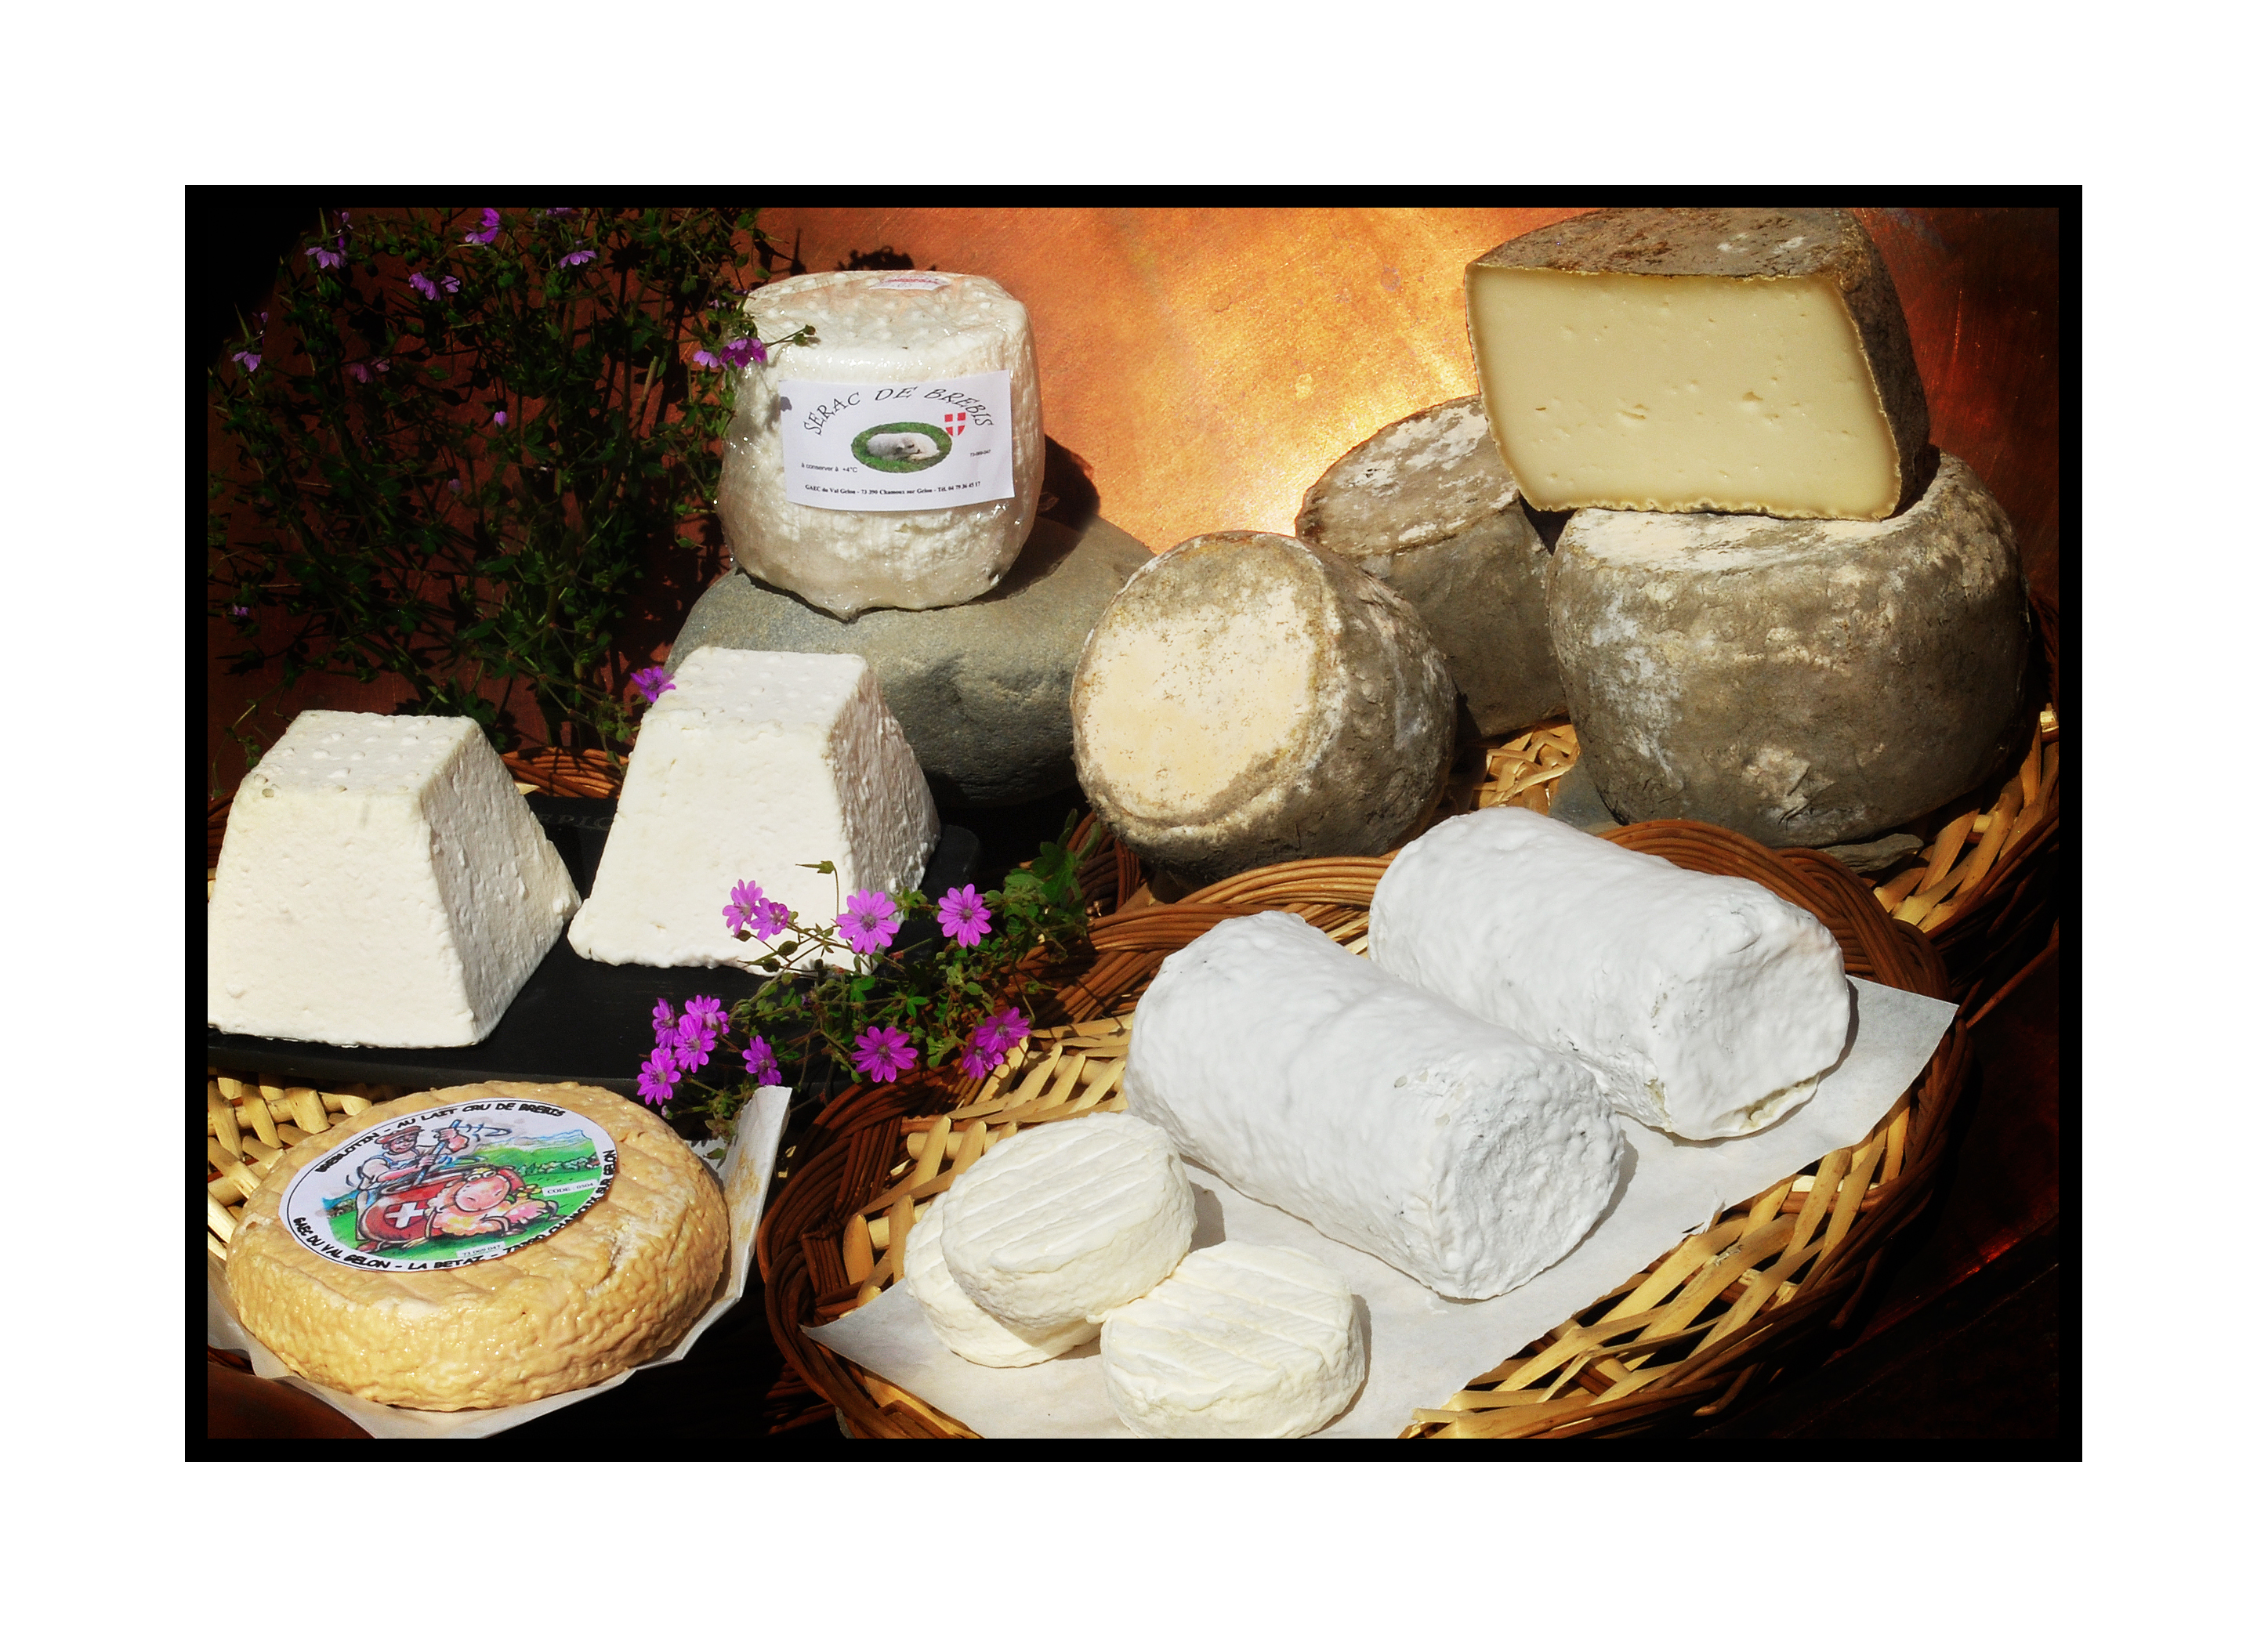 fromages de savoie-Saveurs de nos fermes-Magasin de producteurs Saveurs de nos fermes -Albertville-Gilly Sur Isère-savoie- vente directe- agriculteur-produits locaux-